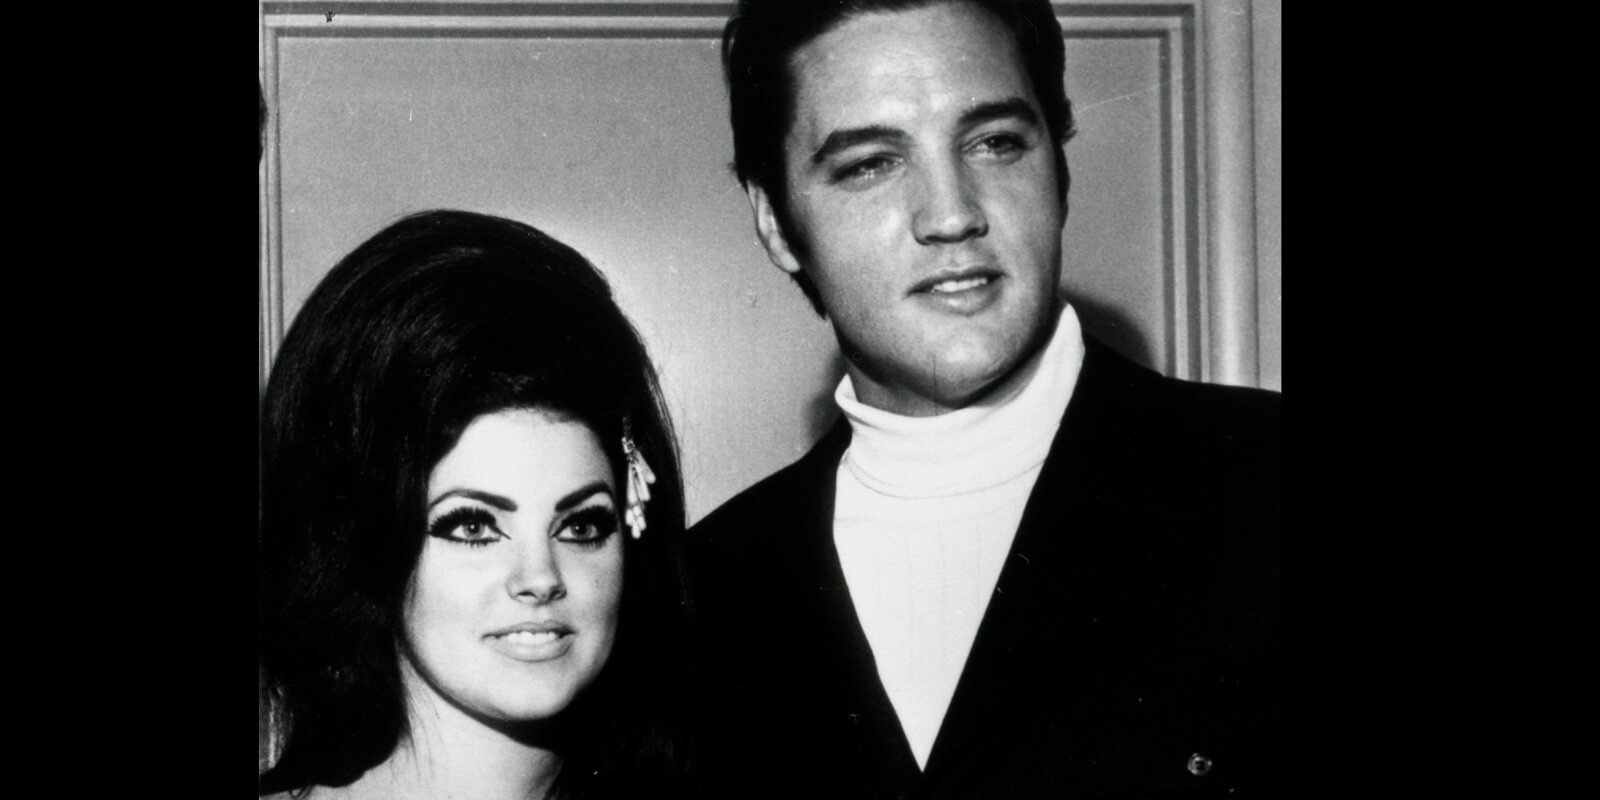 Priscilla Presley and Elvis Presley photographed in Las Vegas in 1968.